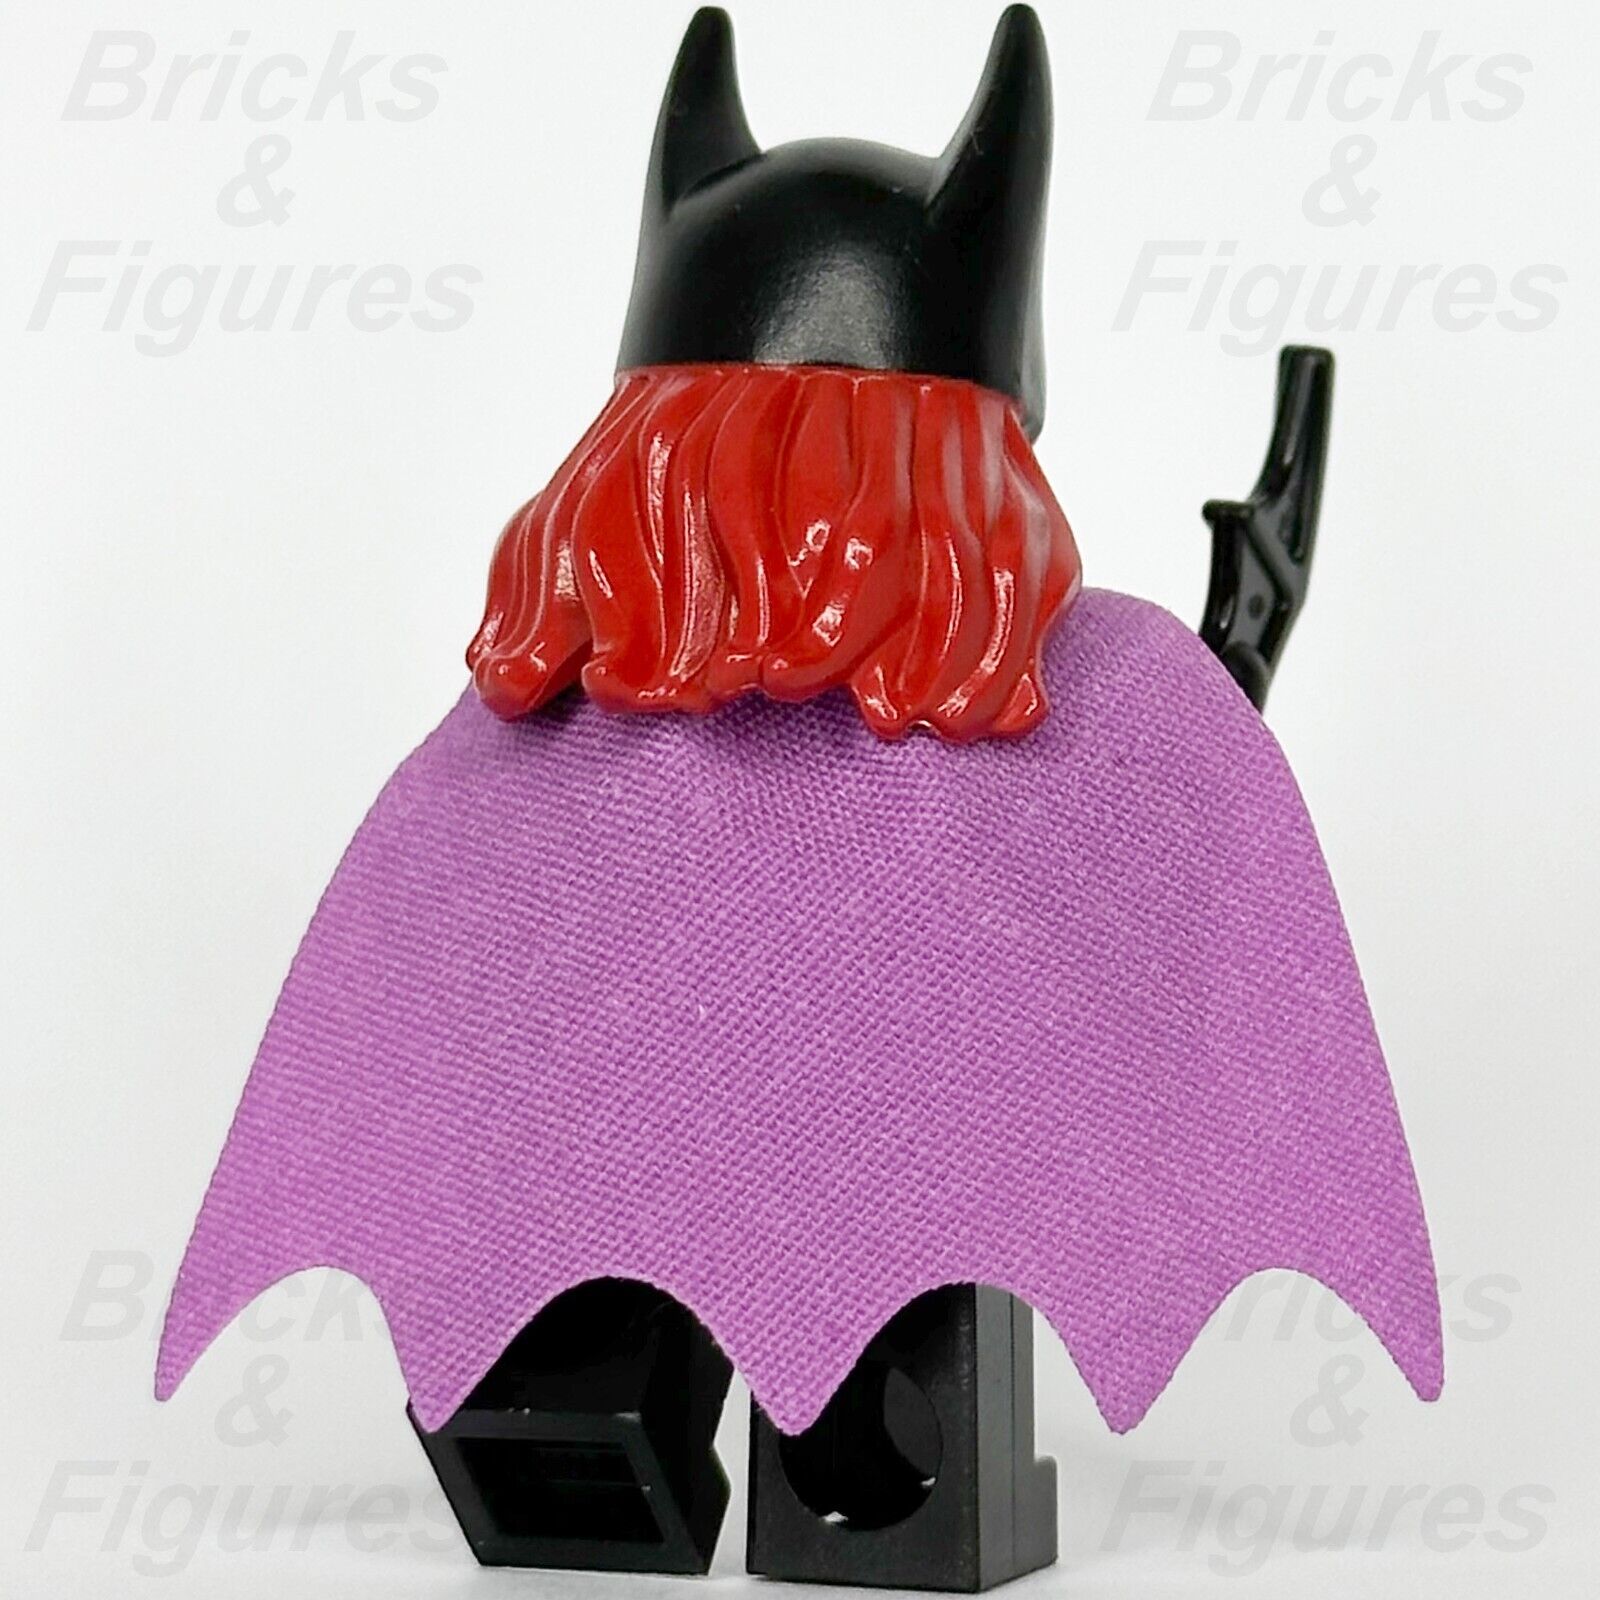 LEGO Super Heroes Batgirl Minifigure Batman 2 DC Lavender Cape 76013 sh092